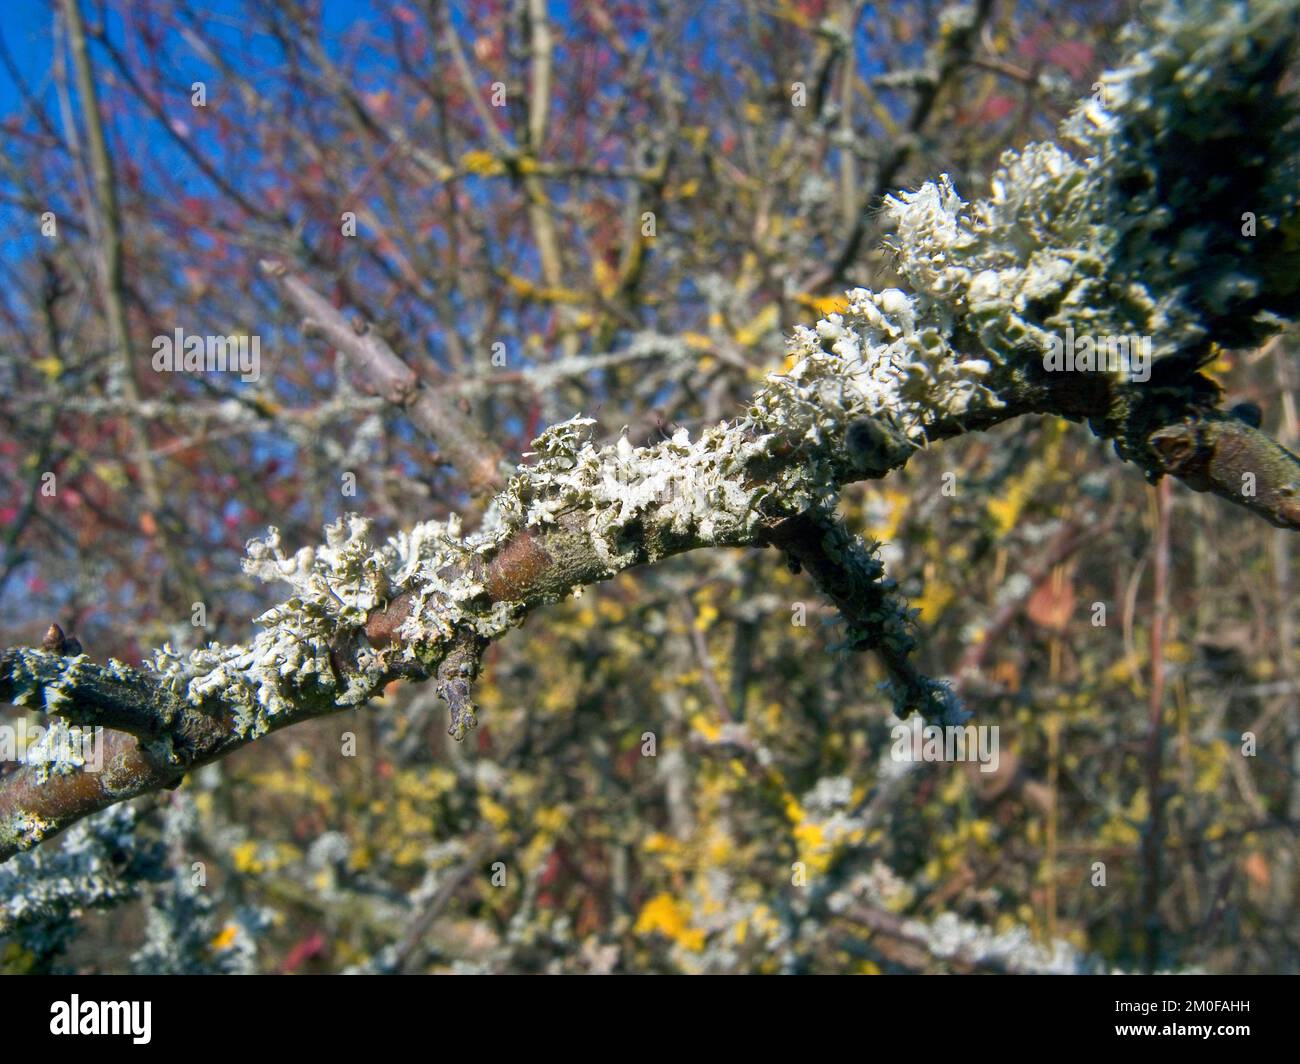 speckled rag lichen, sea-storm lichen, giant shield lichen (Cetrelia cetrarioides), on a branch, Germany Stock Photo